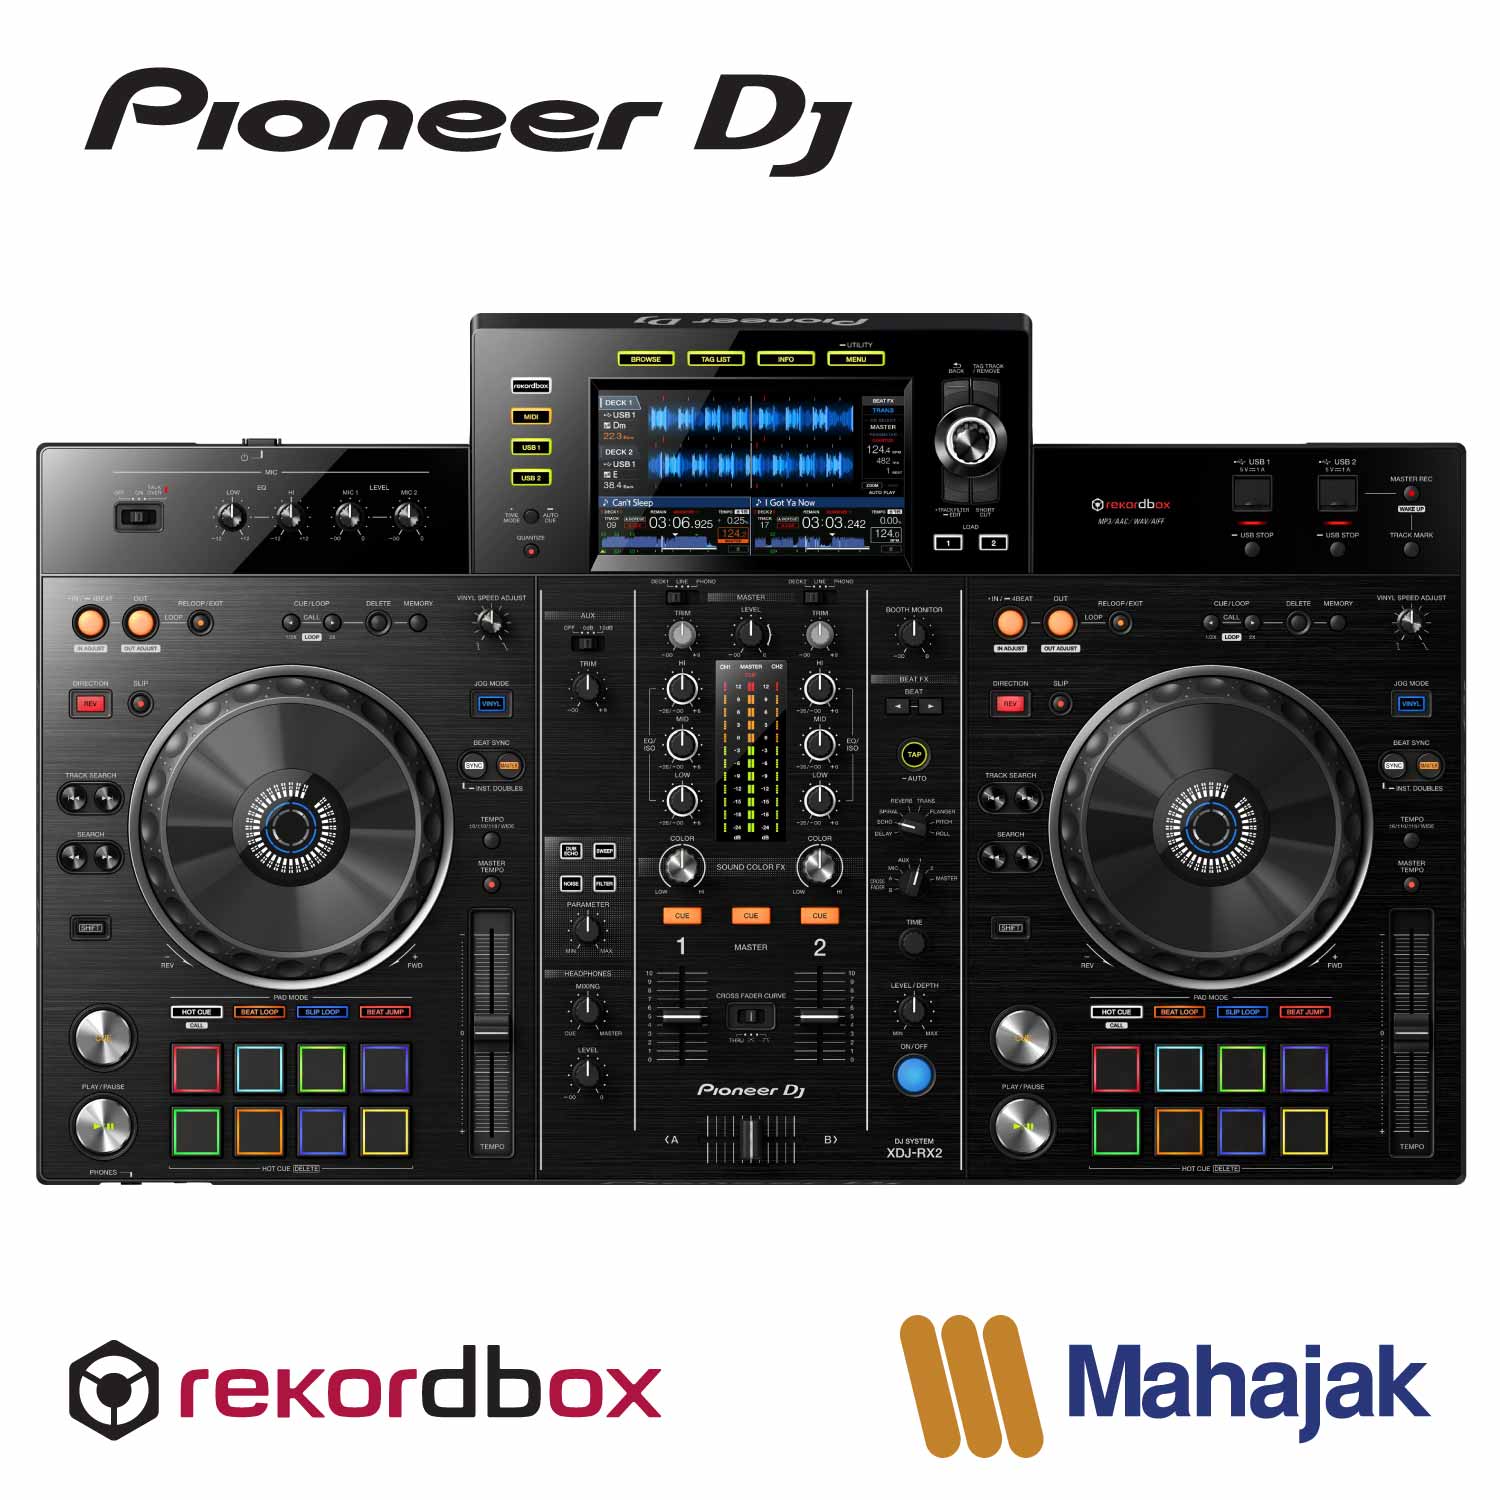 Pioneer DJ XDJ-RX2 | All-in-one DJ system for rekordbox